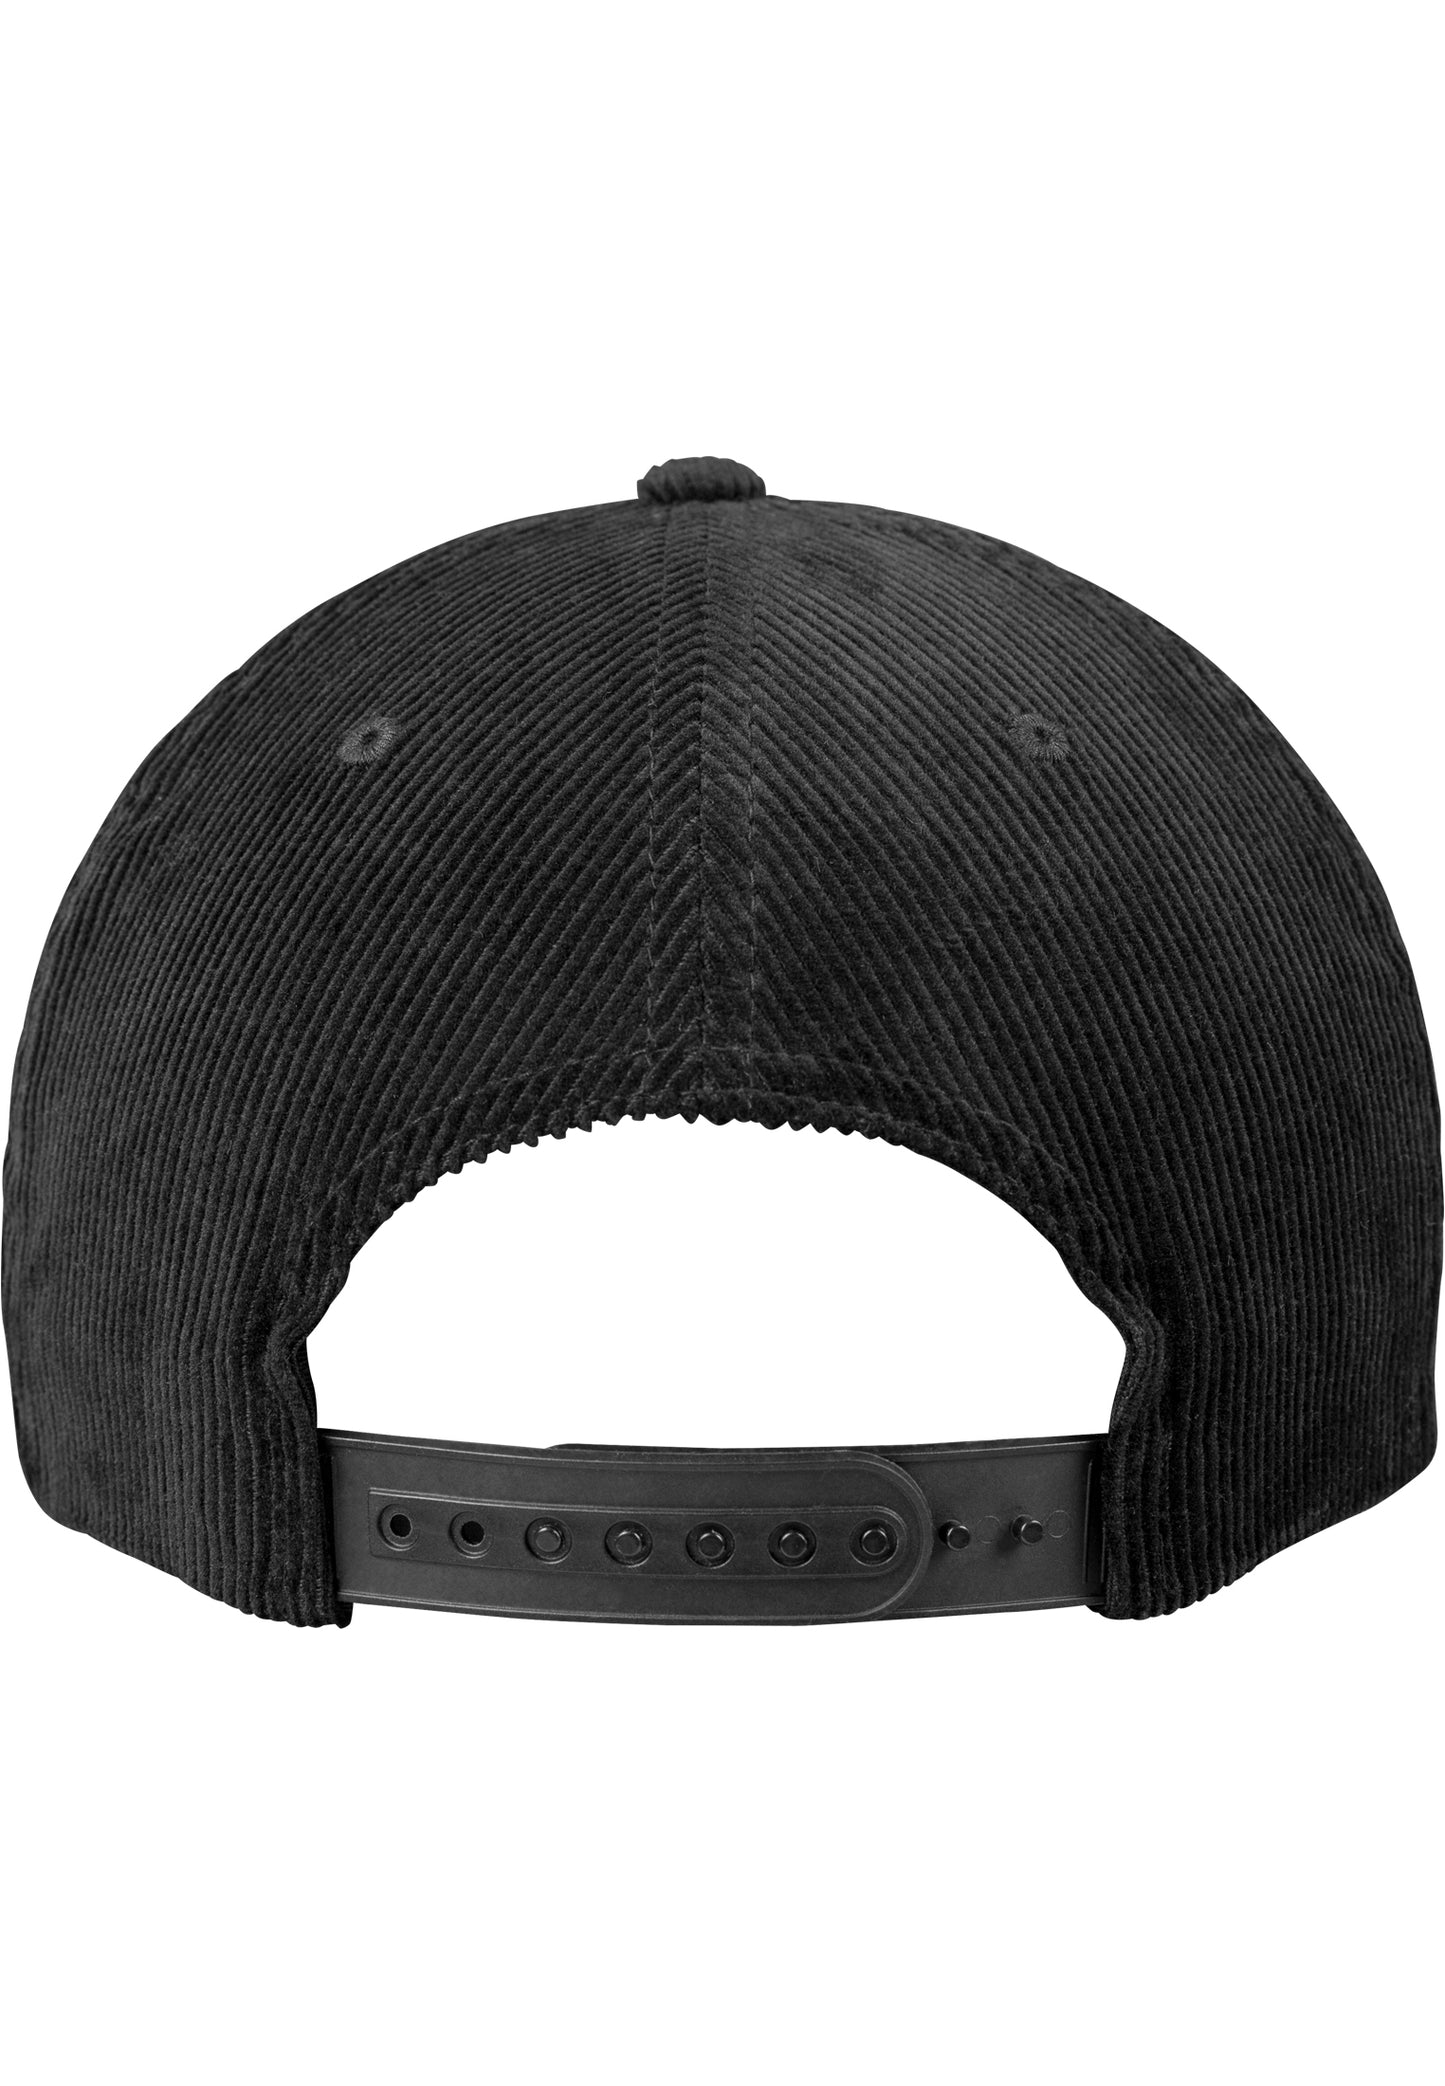 Premium Corduroy Snapback - Black - Headz Up 